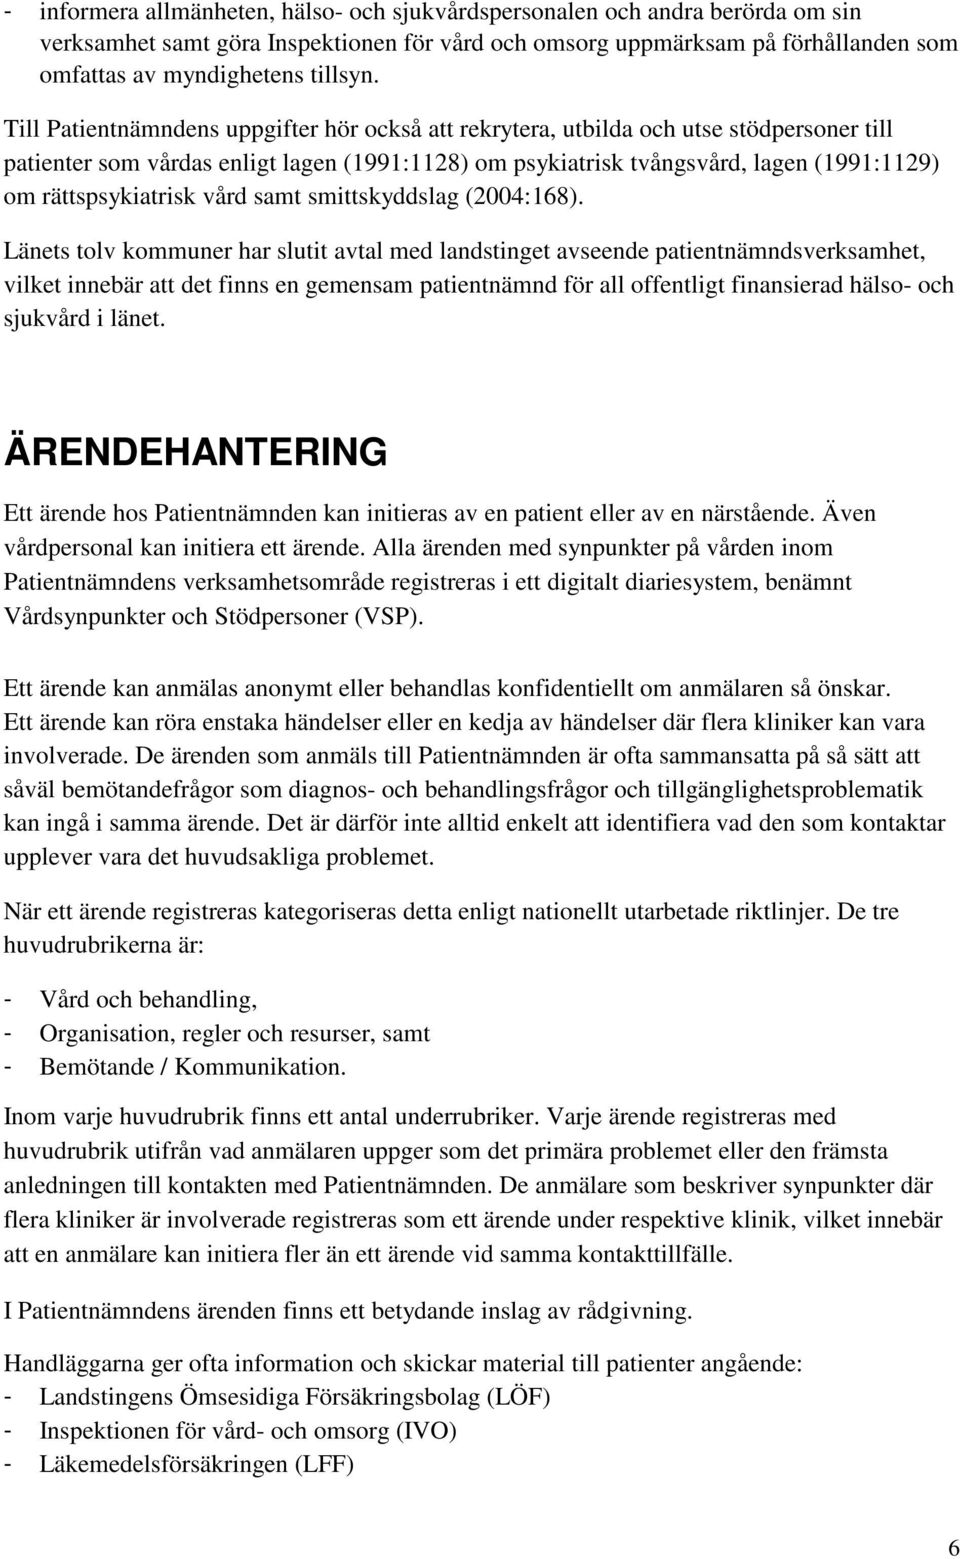 rättspsykiatrisk vård samt smittskyddslag (2004:168).